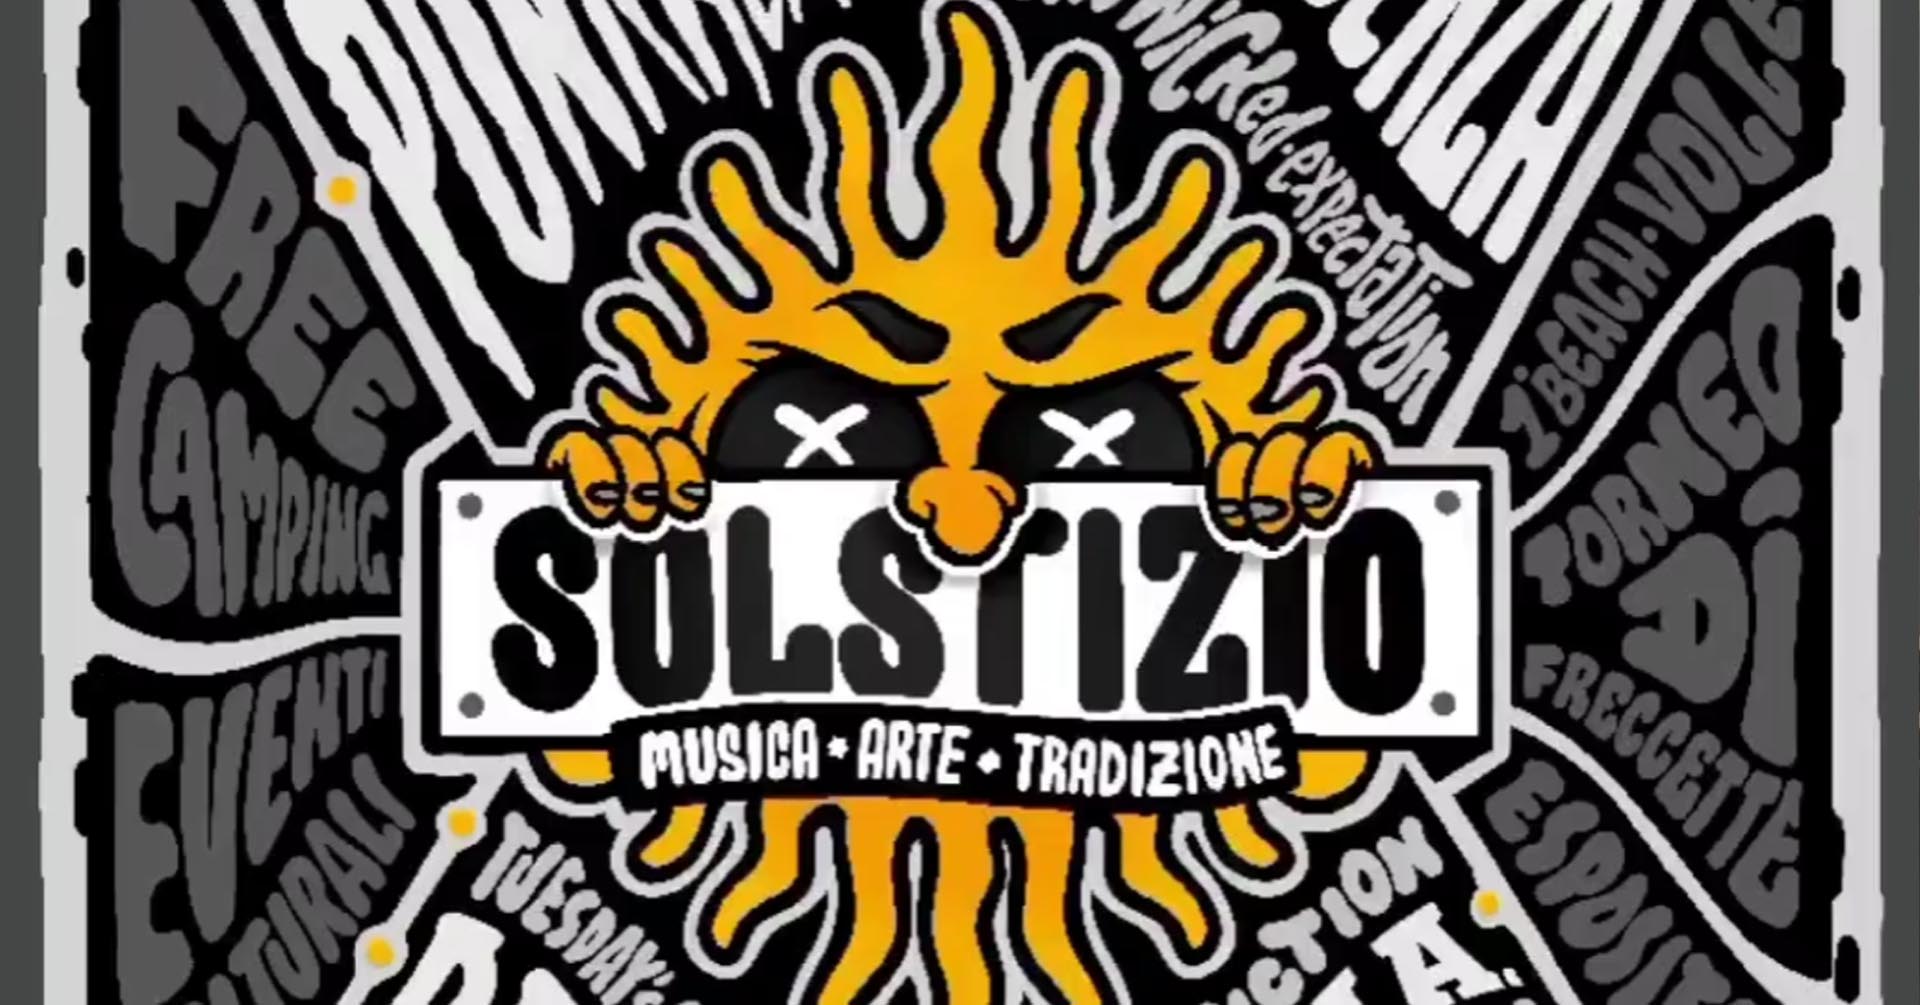 12 band per il Solstizio festival. Punkreas in apertura